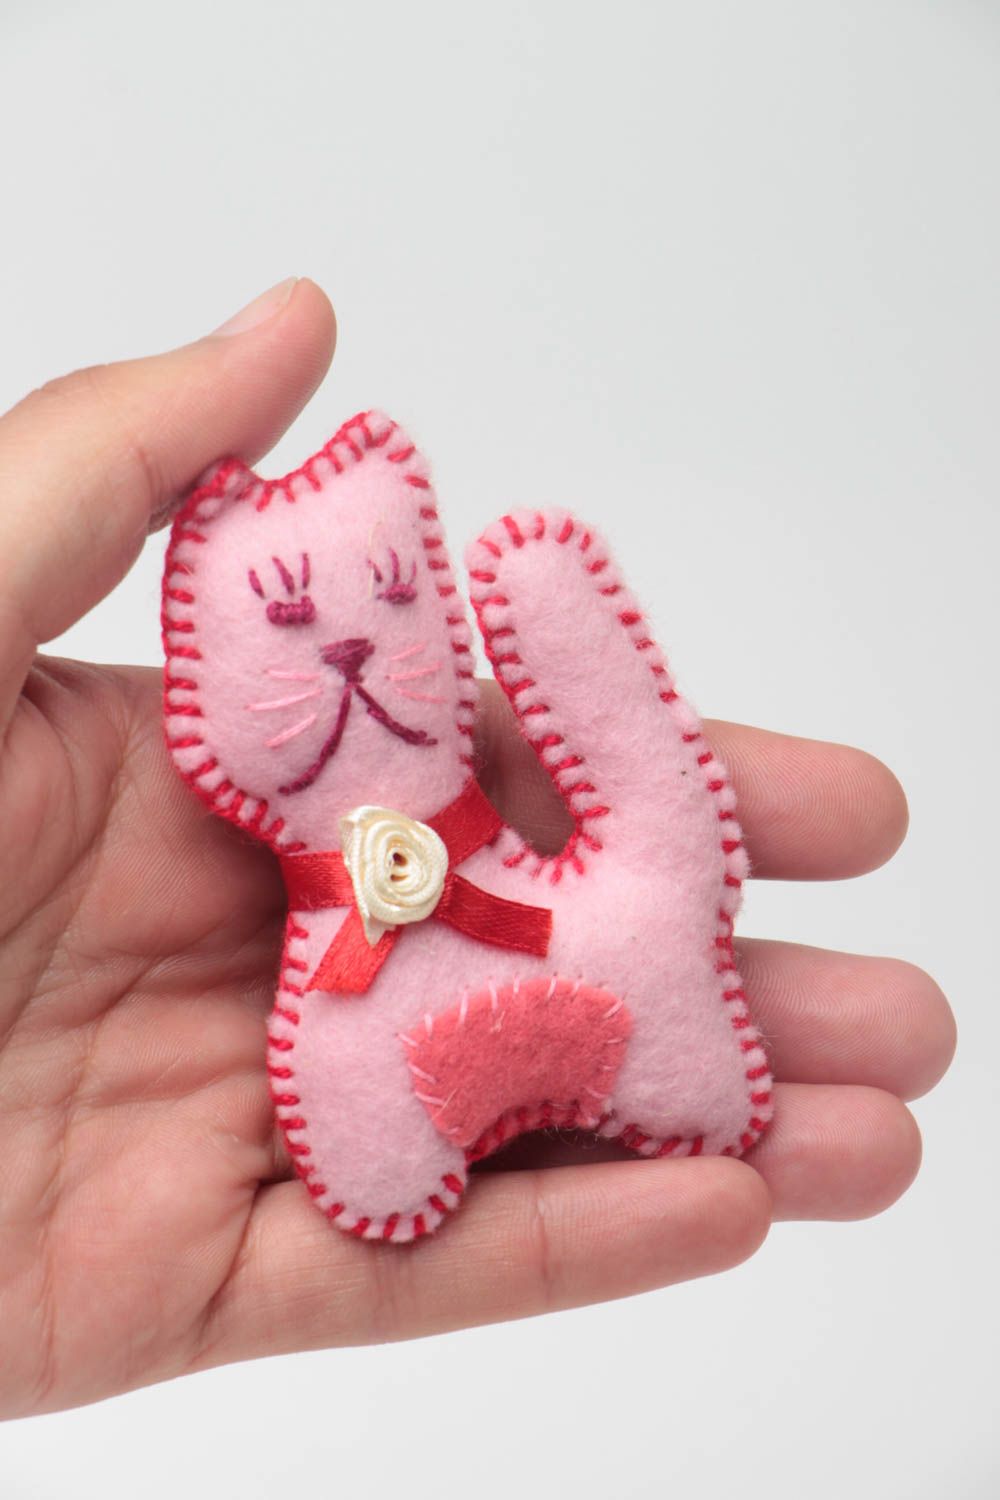 Handmade Stoff Kuscheltier Katze aus Filz weich rosa klein schön künstlerisch foto 5